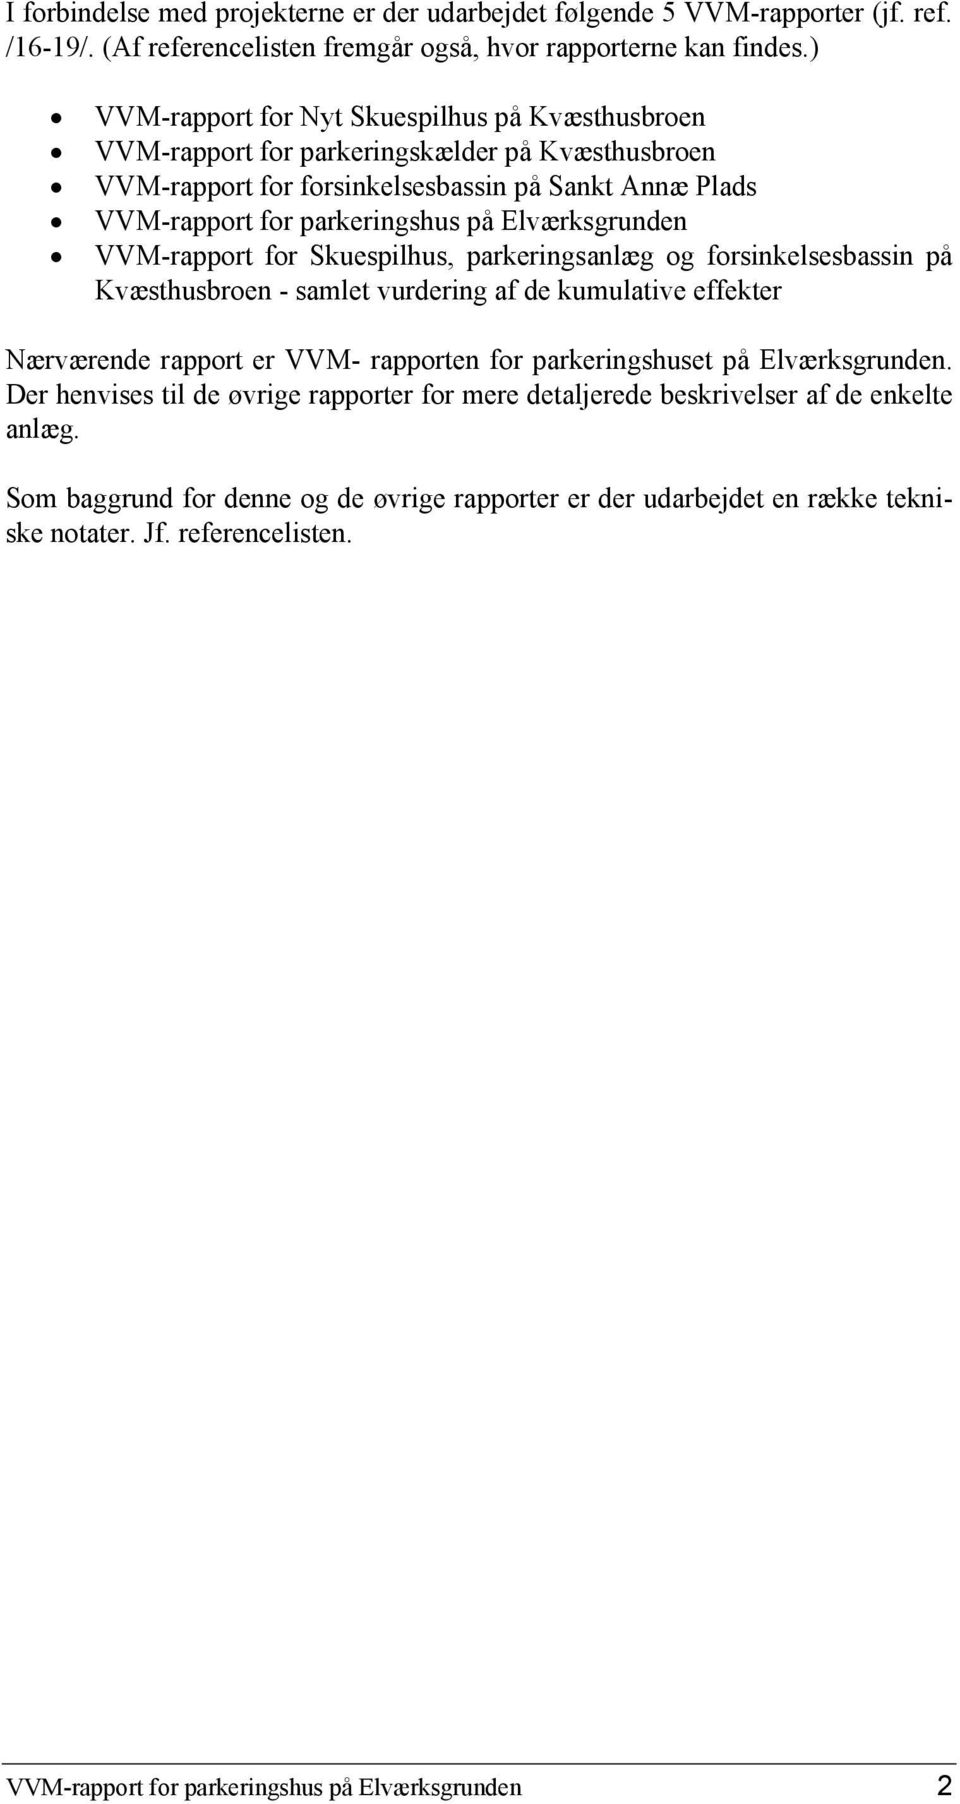 Elværksgrunden VVM-rapport for Skuespilhus, parkeringsanlæg og forsinkelsesbassin på Kvæsthusbroen - samlet vurdering af de kumulative effekter Nærværende rapport er VVM- rapporten for